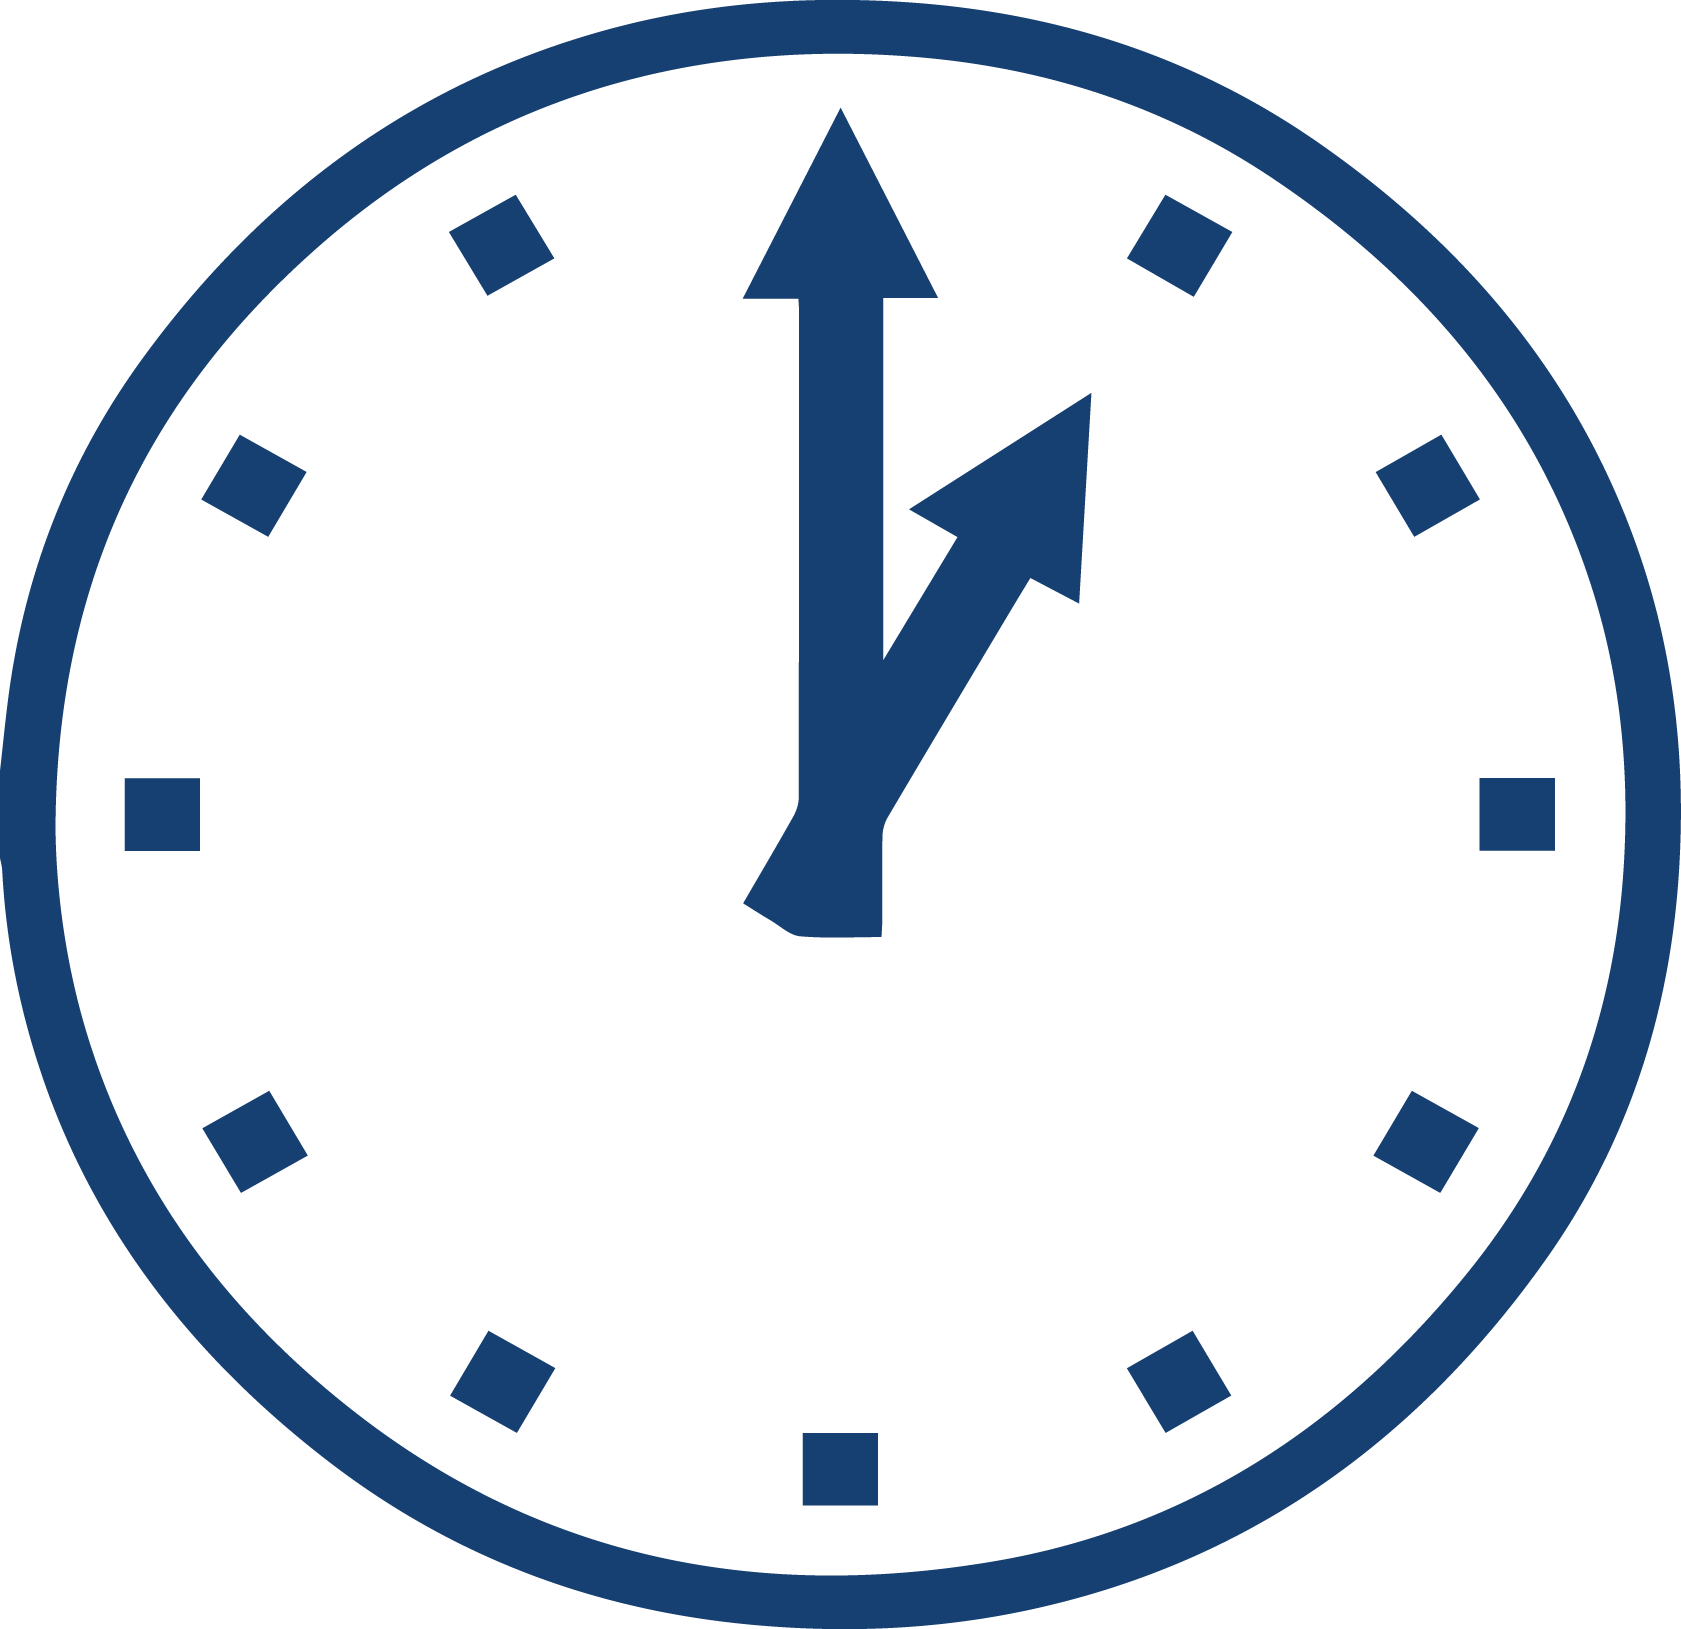 Знаки на часах. Иконка часы на прозрачном фоне. Часы со стрелками на синем фоне. Иконка часов 12 часов. Часы по часовой стрелке пиктограмма.